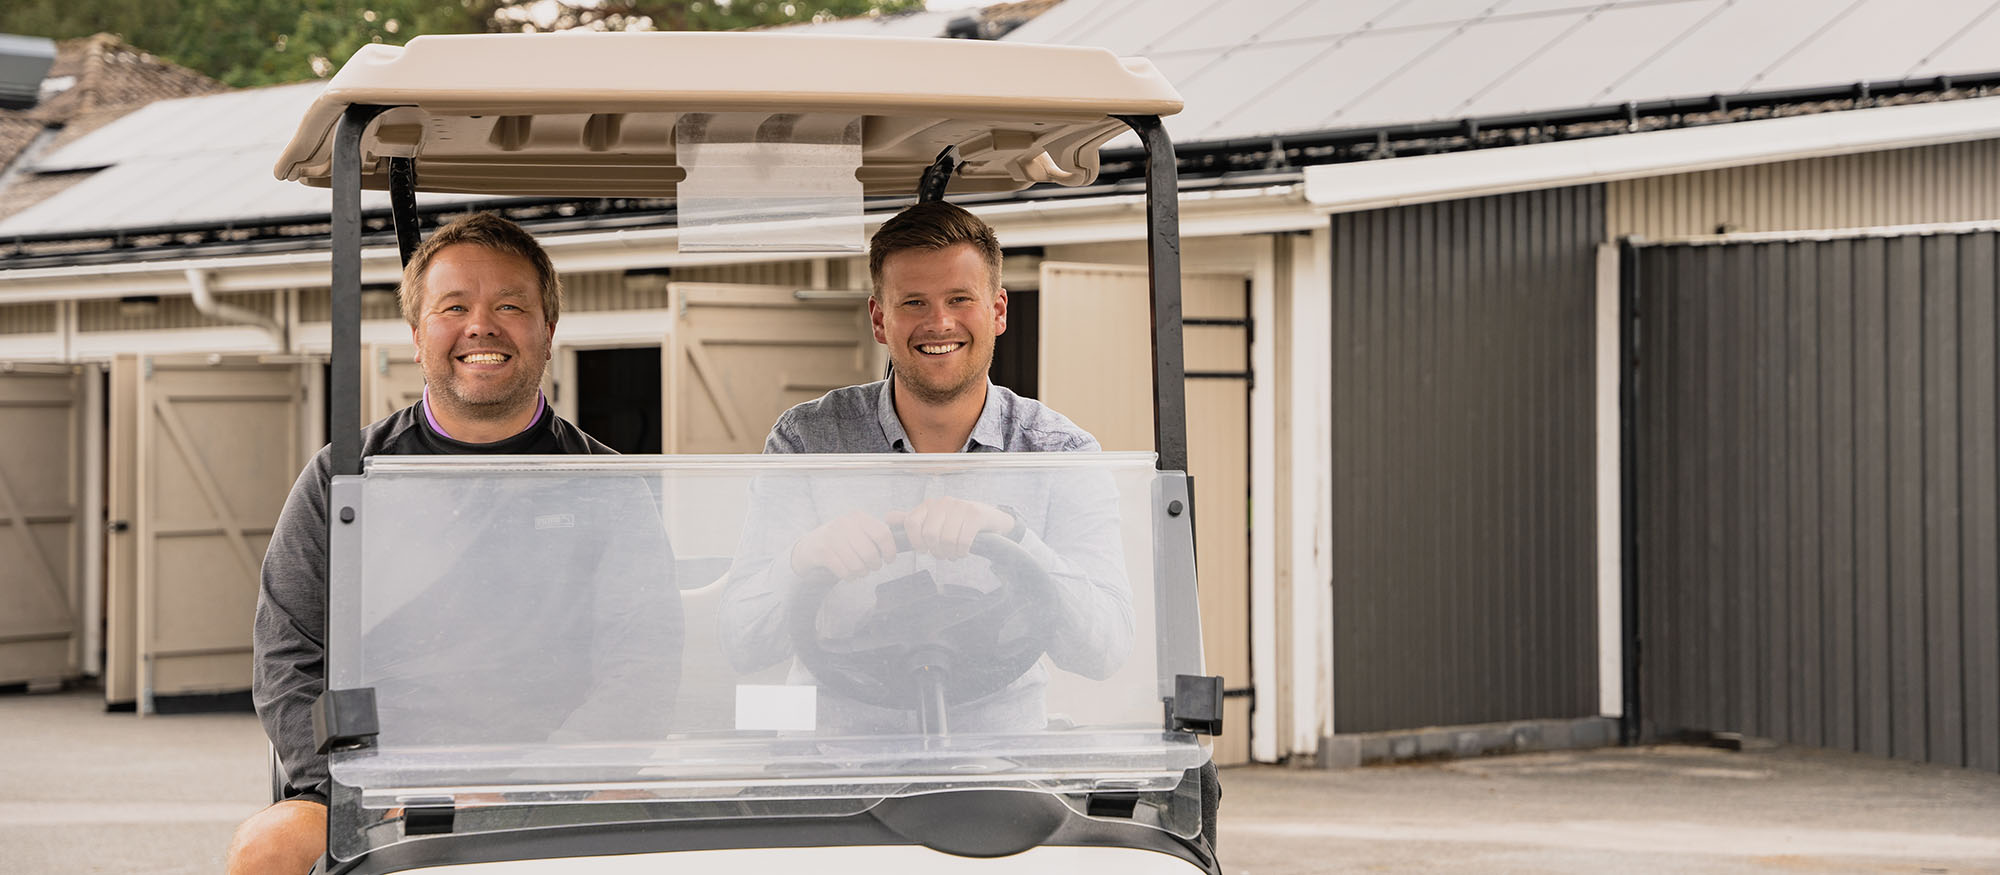 Kristian och Tobias sitter i en golfbil